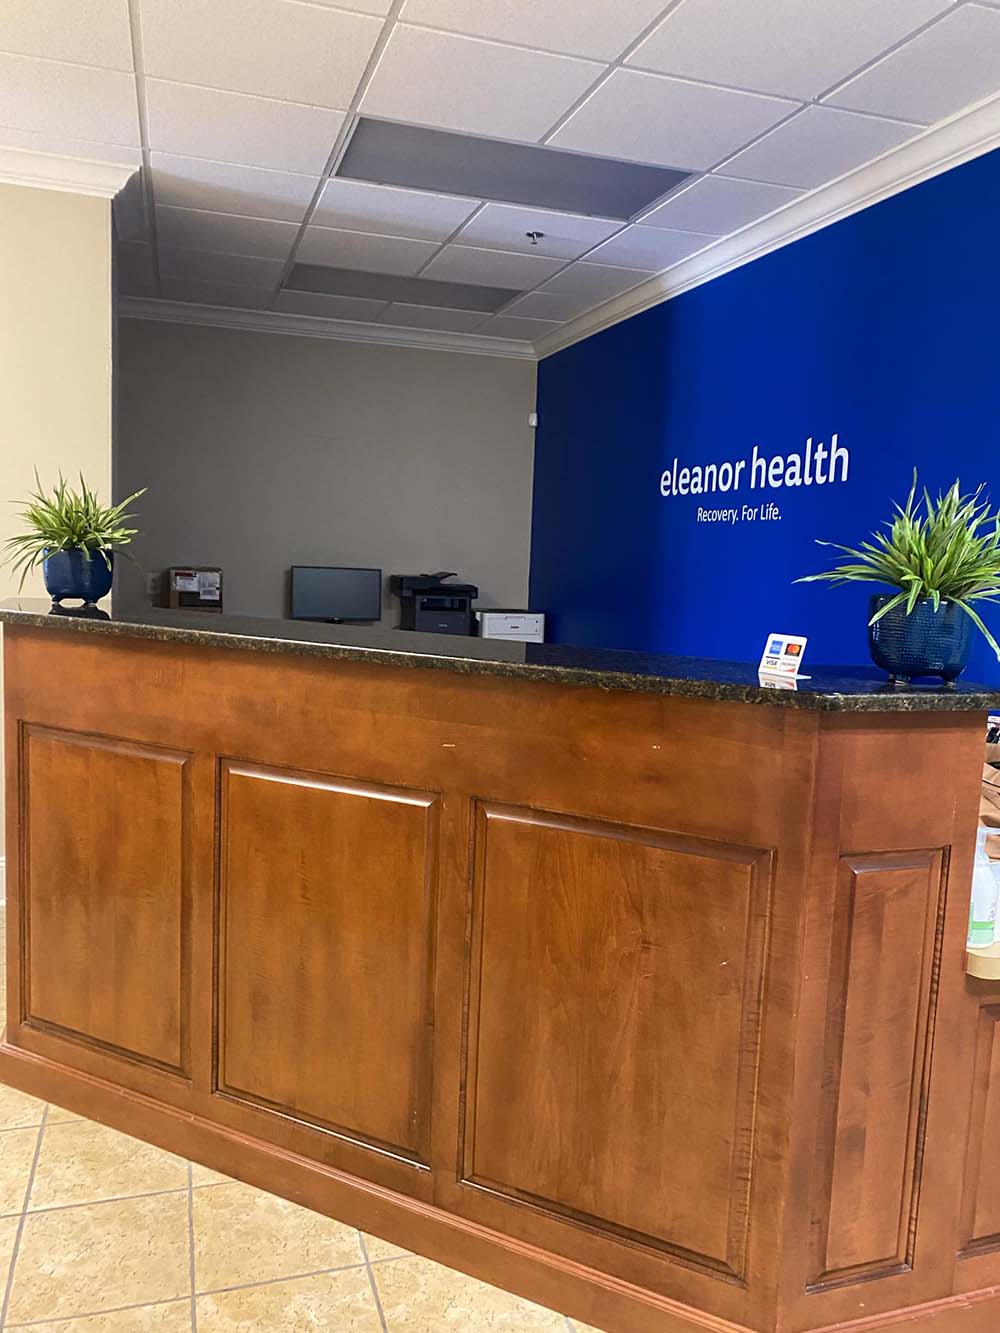 Eleanor Health's Fayetteville Clinic in North Carolina